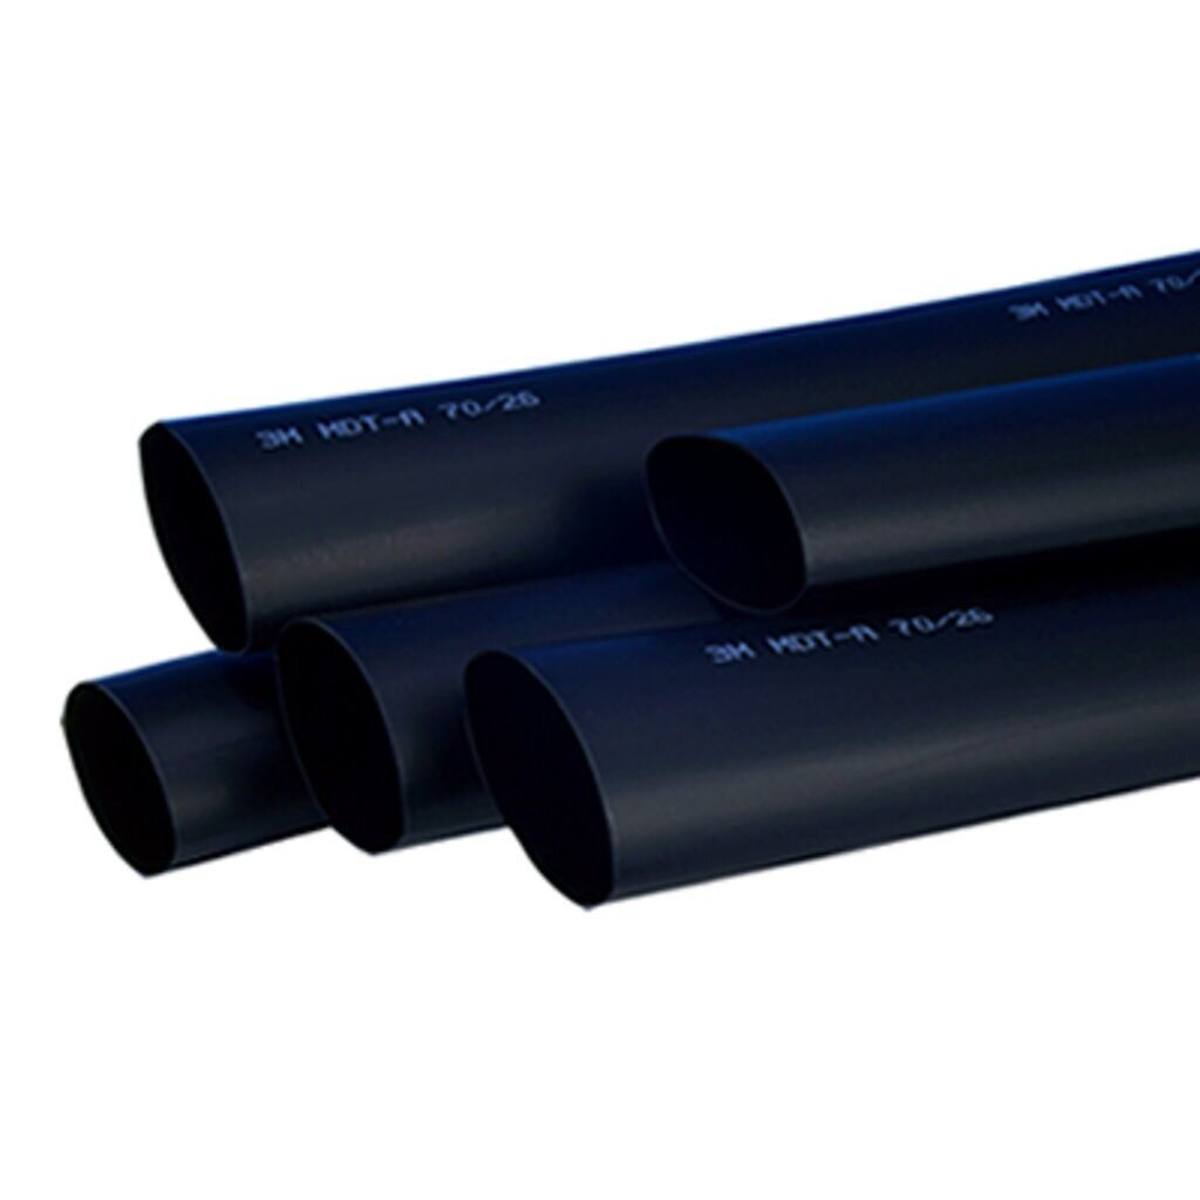 3M HDT-A Tubo termorestringente a parete spessa con adesivo, nero, 48/15 mm, 1 m